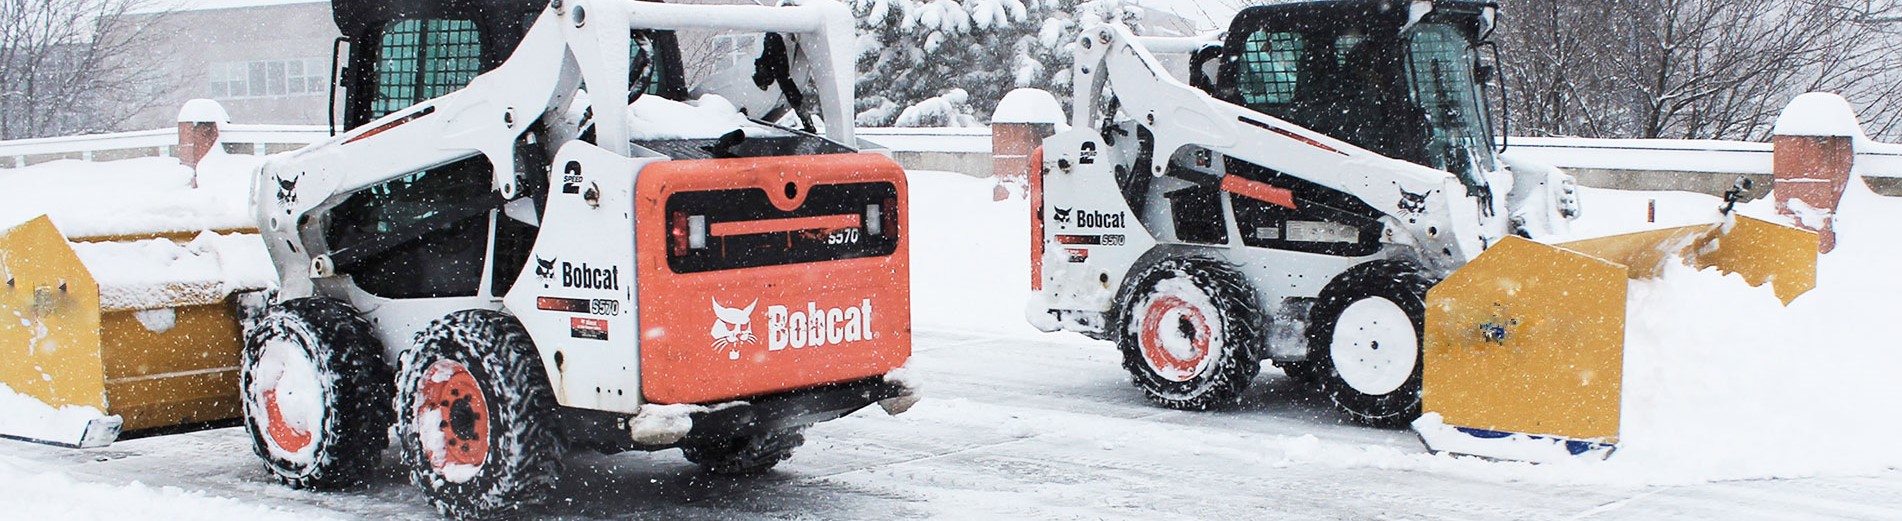 Уборка снега в Луге: вывезти снег, почистить снег с участка